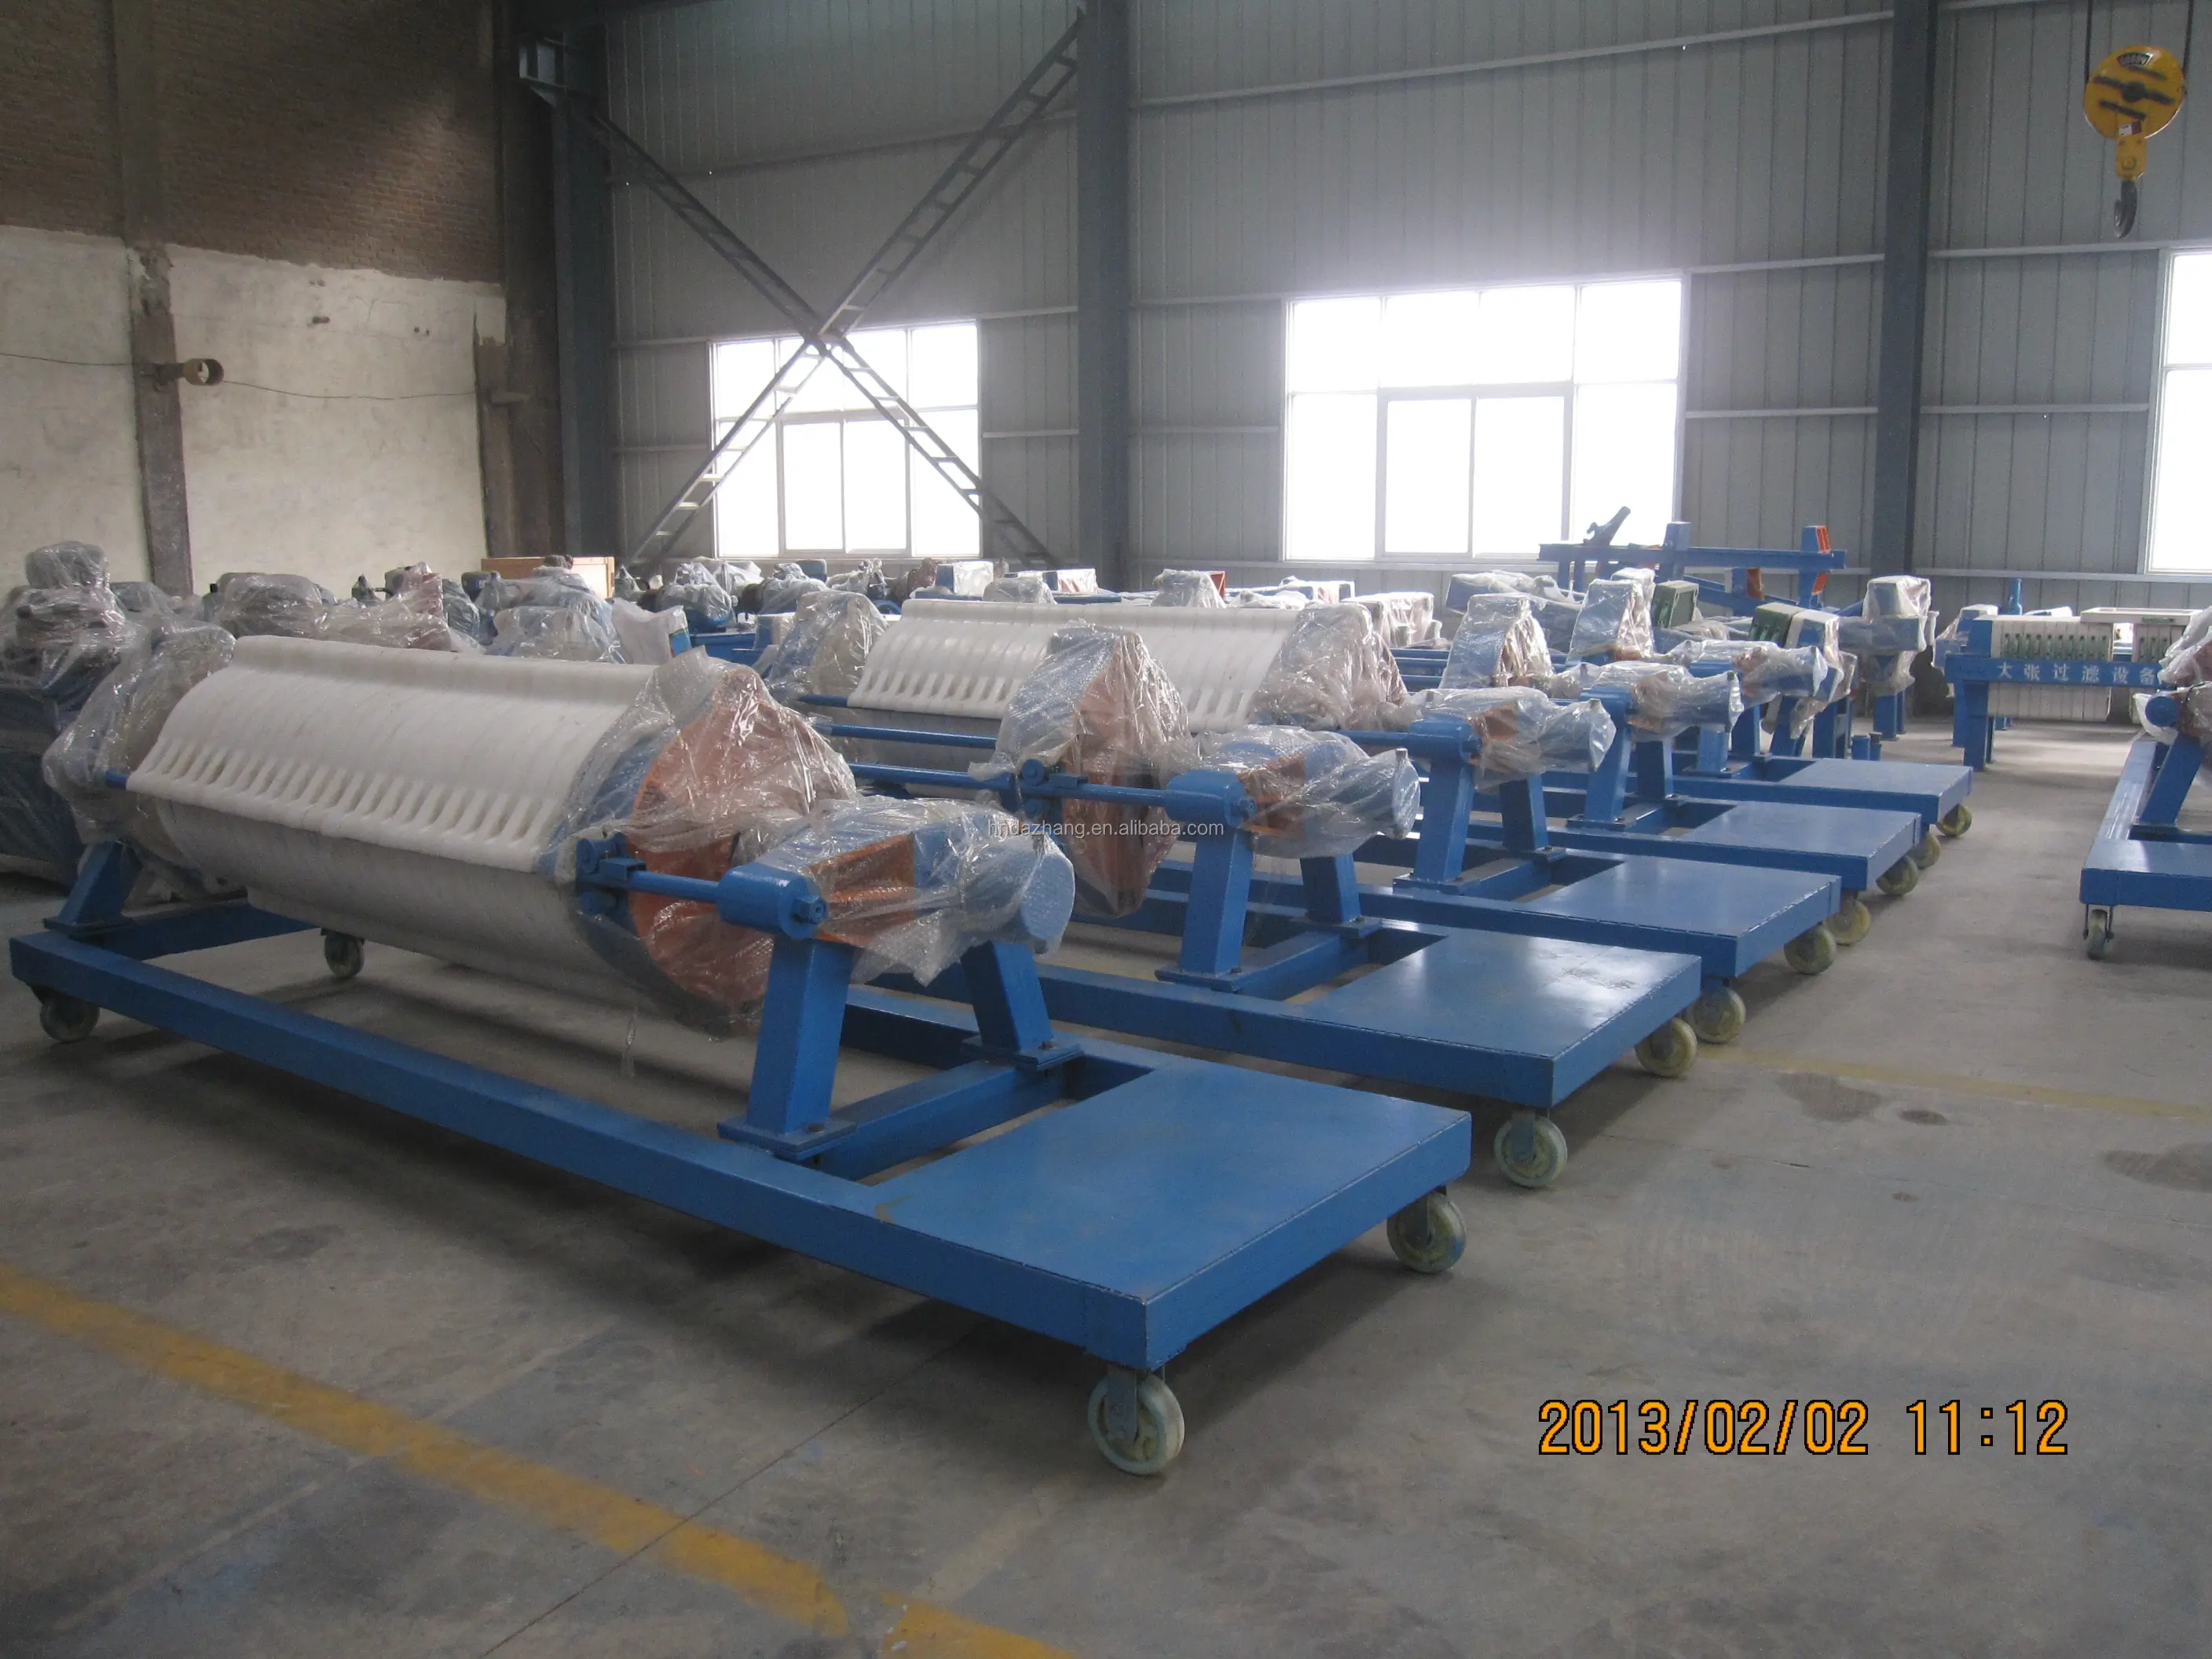 Equipo de prensa de filtro de placa de algodón para bebidas o alimentos, equipo de prensado redondo de alta calidad para alimentos y arcilla